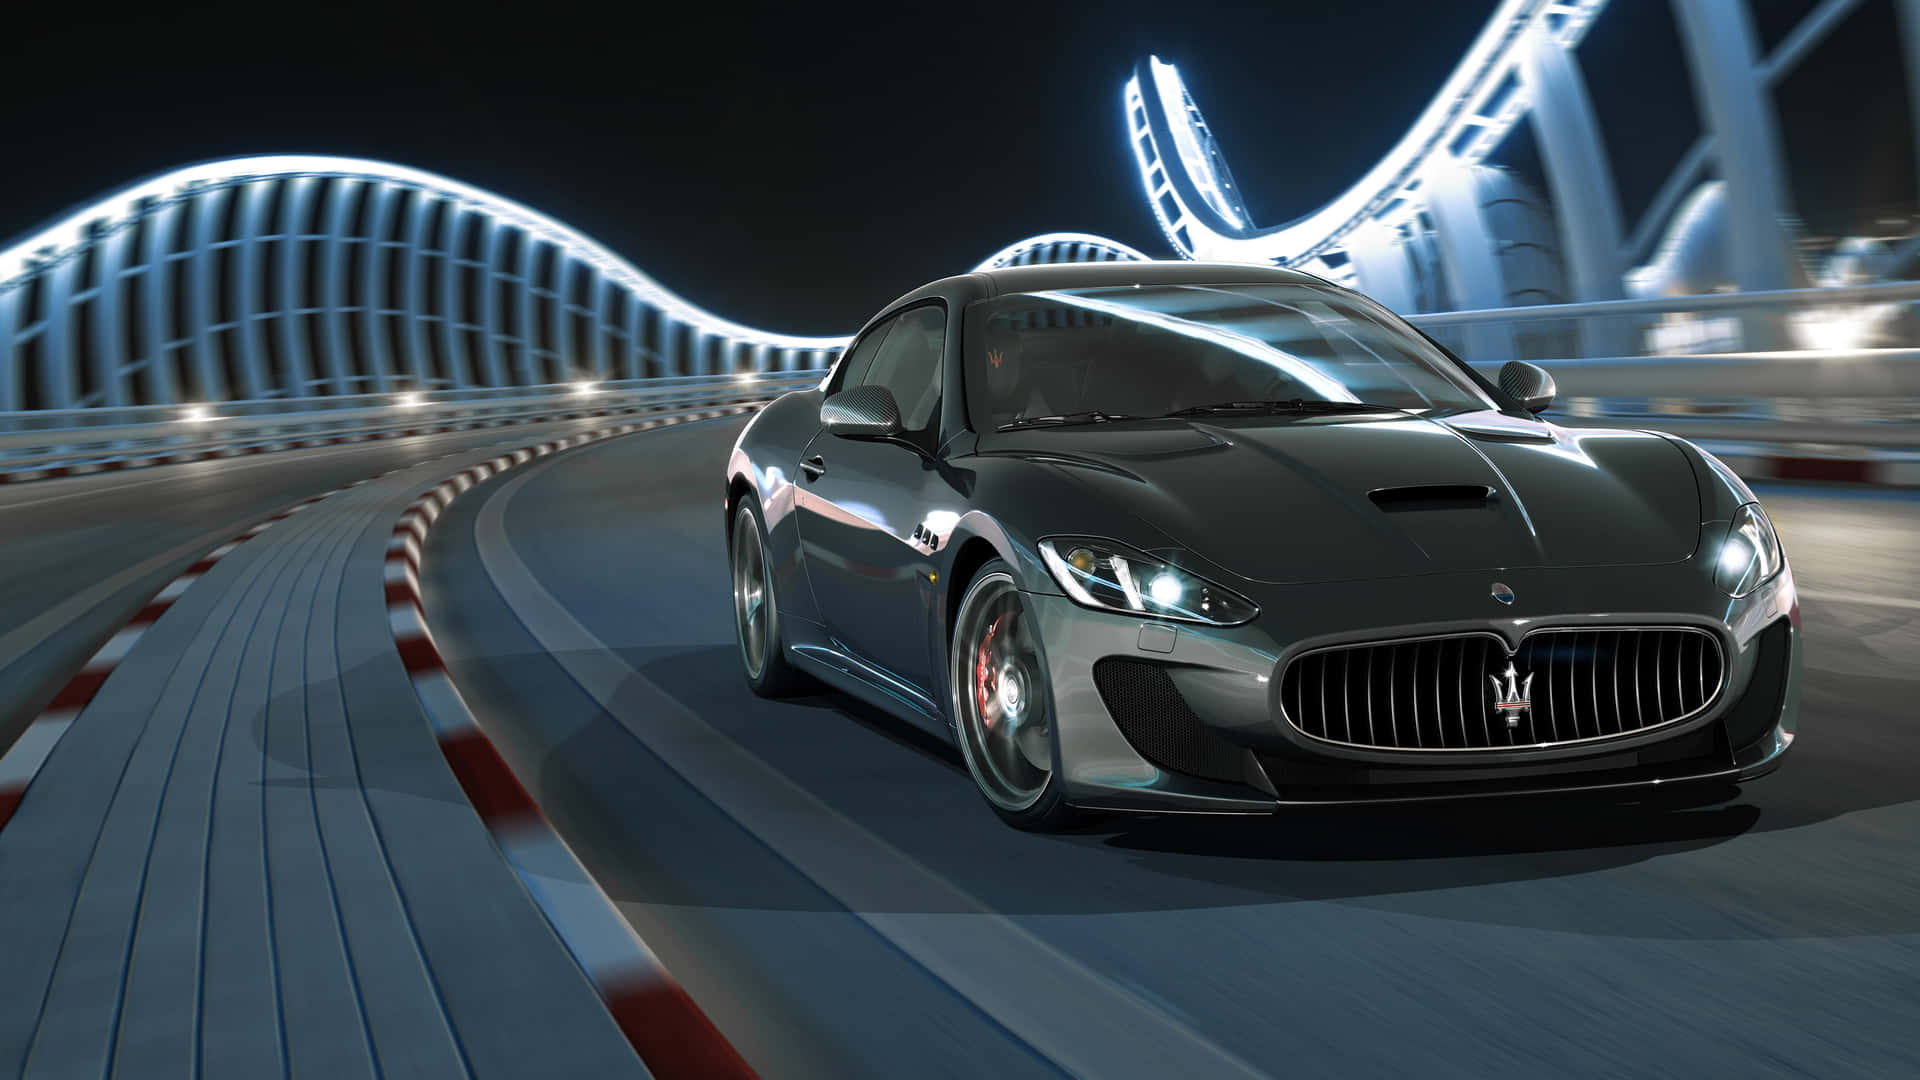 Maseratigranturismo - Maserati Granturismo - Maserati Granturismo - Maserati Granturismo Wallpaper